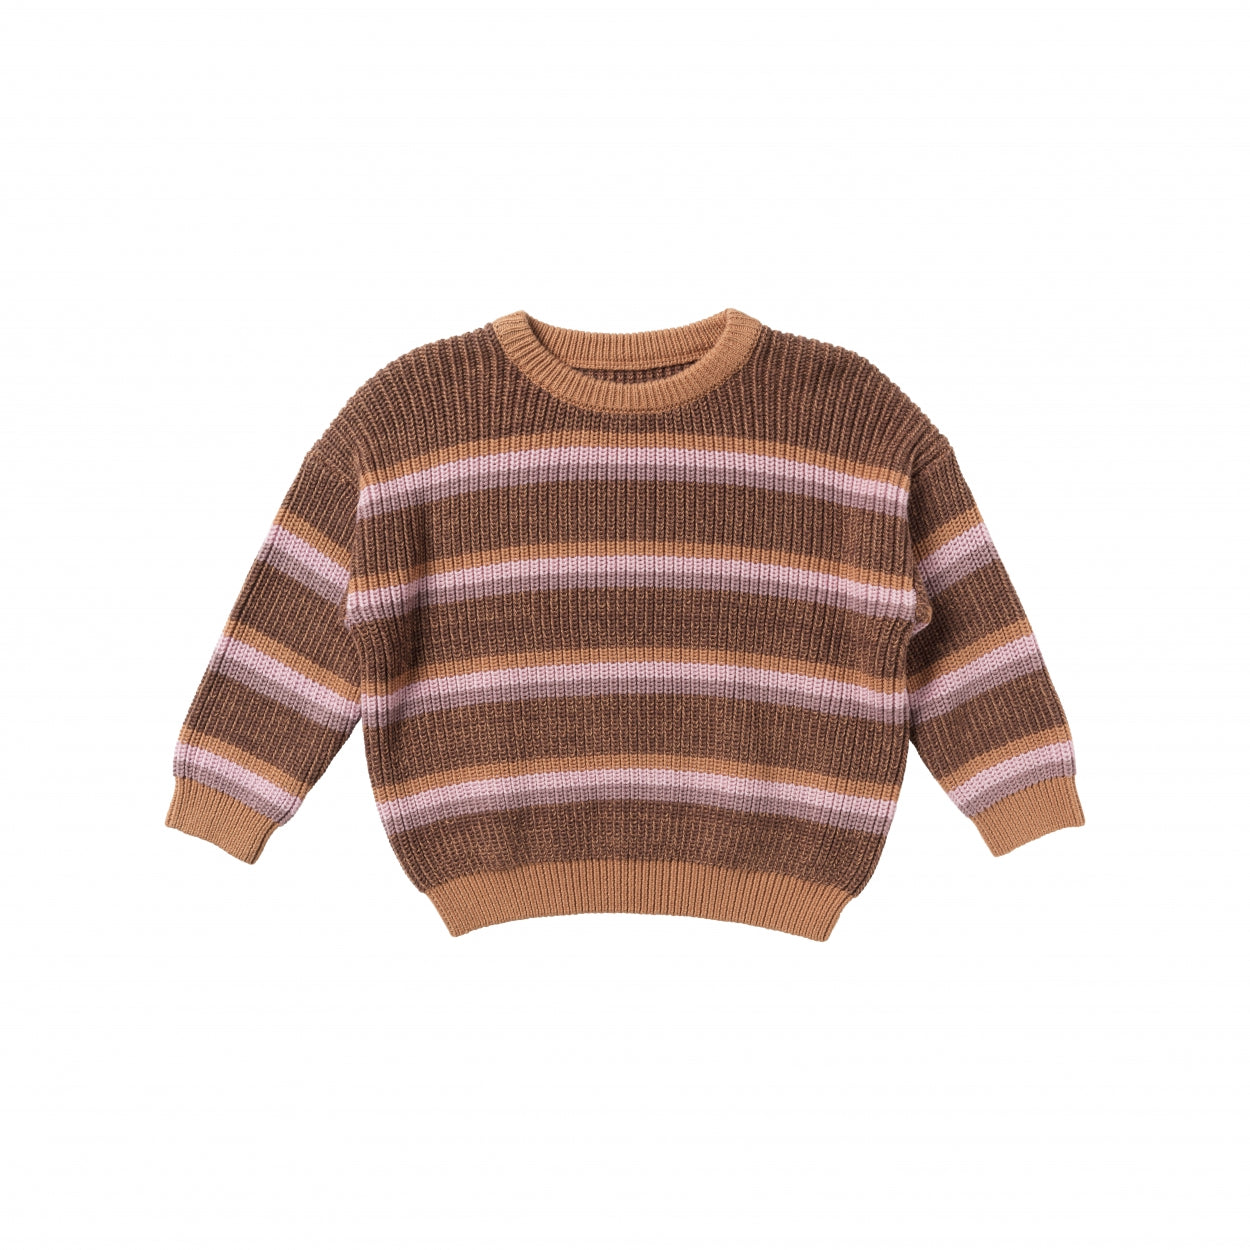 Jongens Sweater Stripe Knit | Nevada van Your Wishes in de kleur Multicolor in maat 122-128.